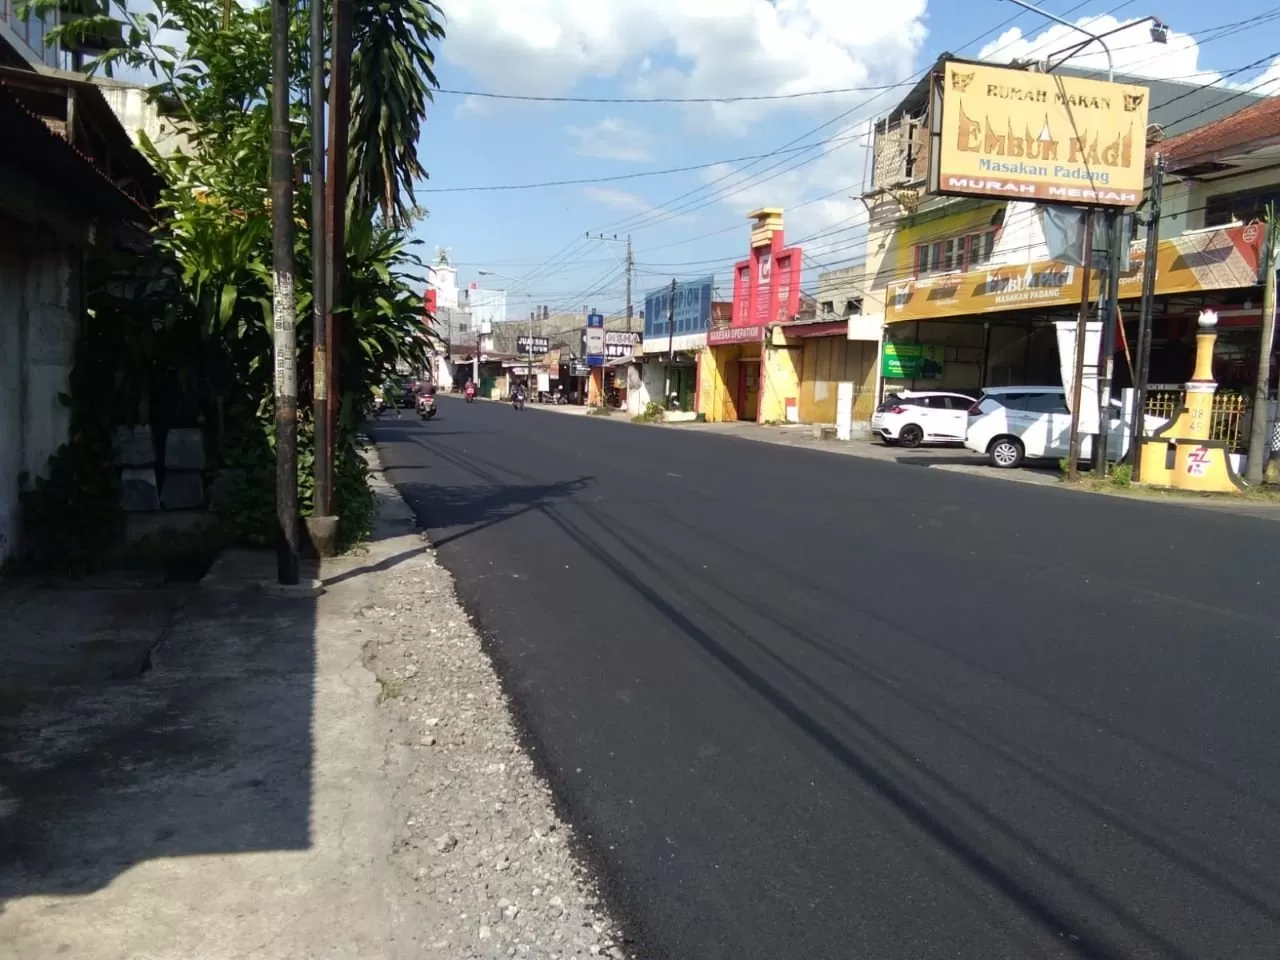   Kondisi jalan selesai diperbaiki berupa pengaspalan ulang oleh Pemkab Sukoharjo. (Wahyu imam ibadi)